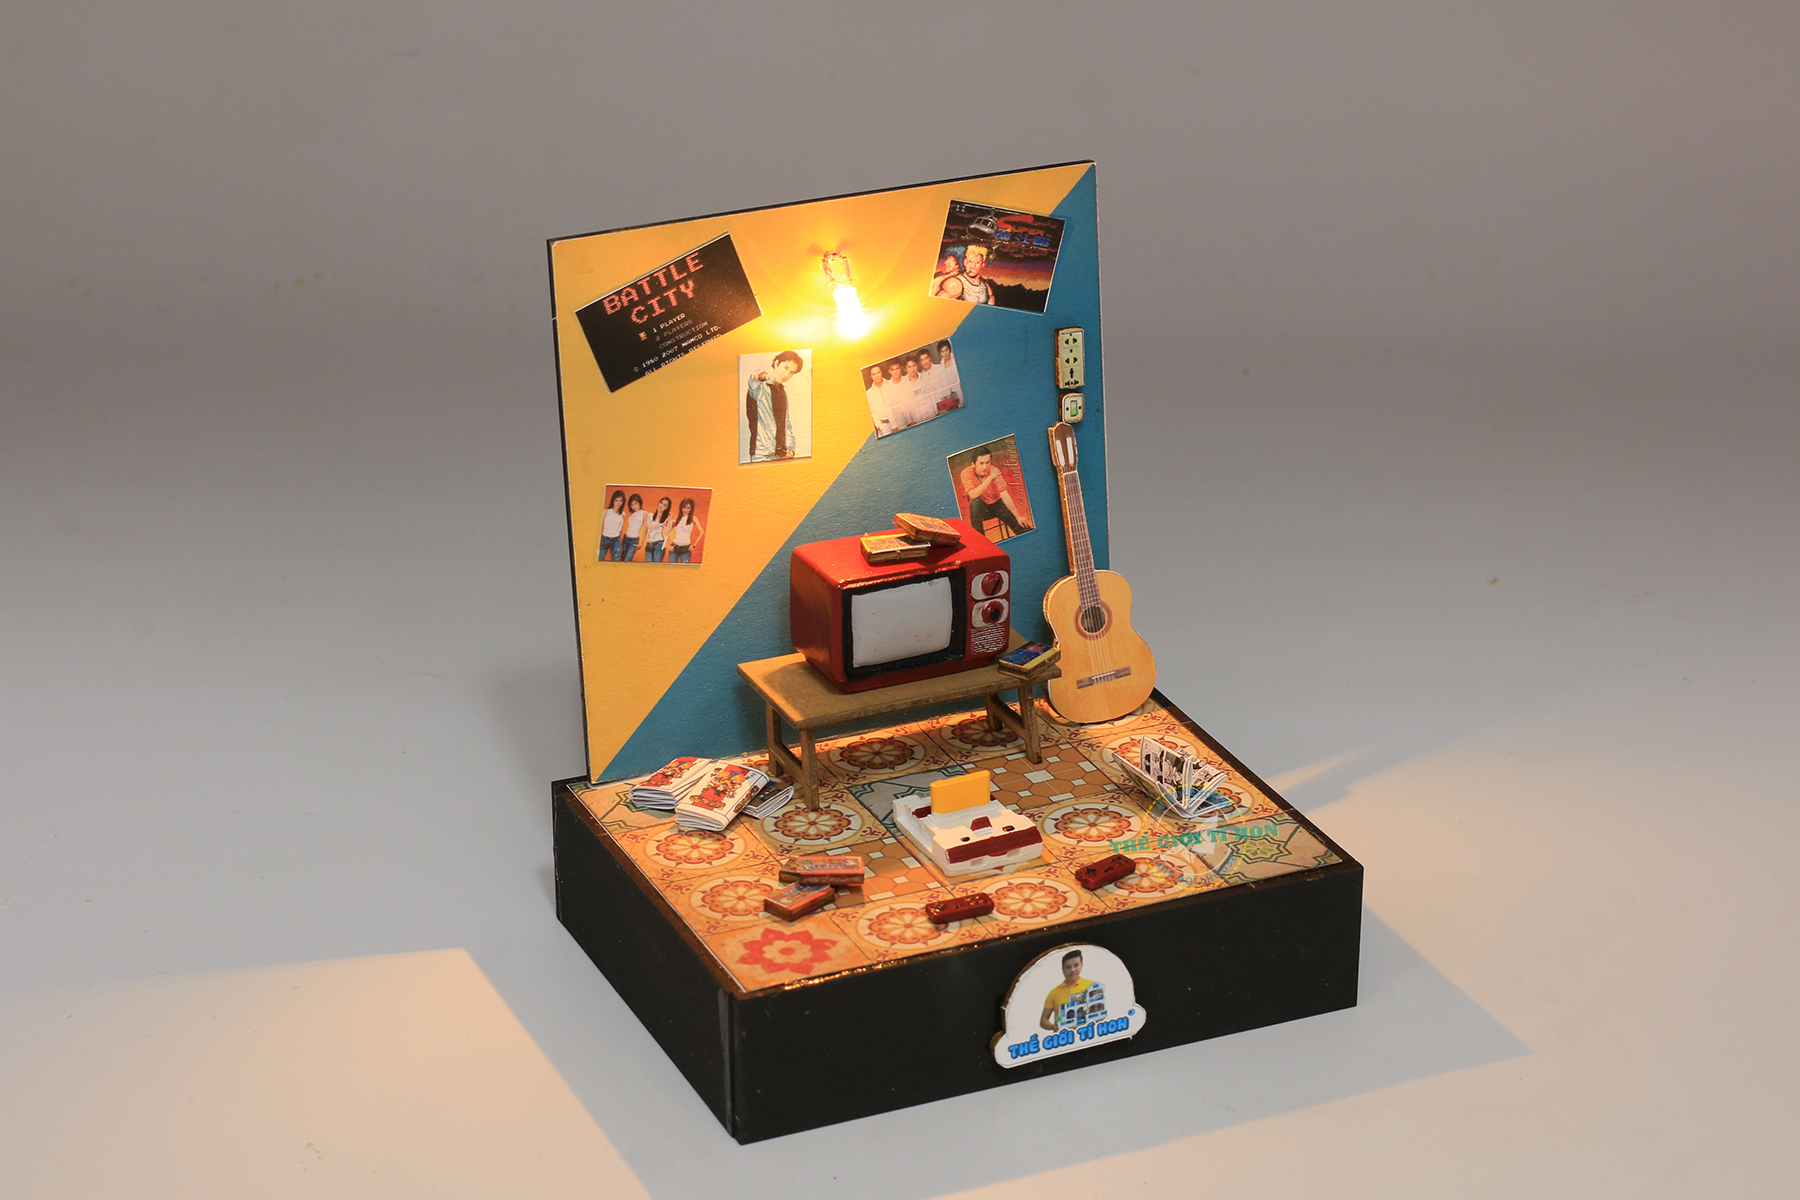 mô hình trò chơi điện tử thu nhỏ ký ức tuổi thơ sài gòn xưa bằng gỗ tí hon - dt01 (1)